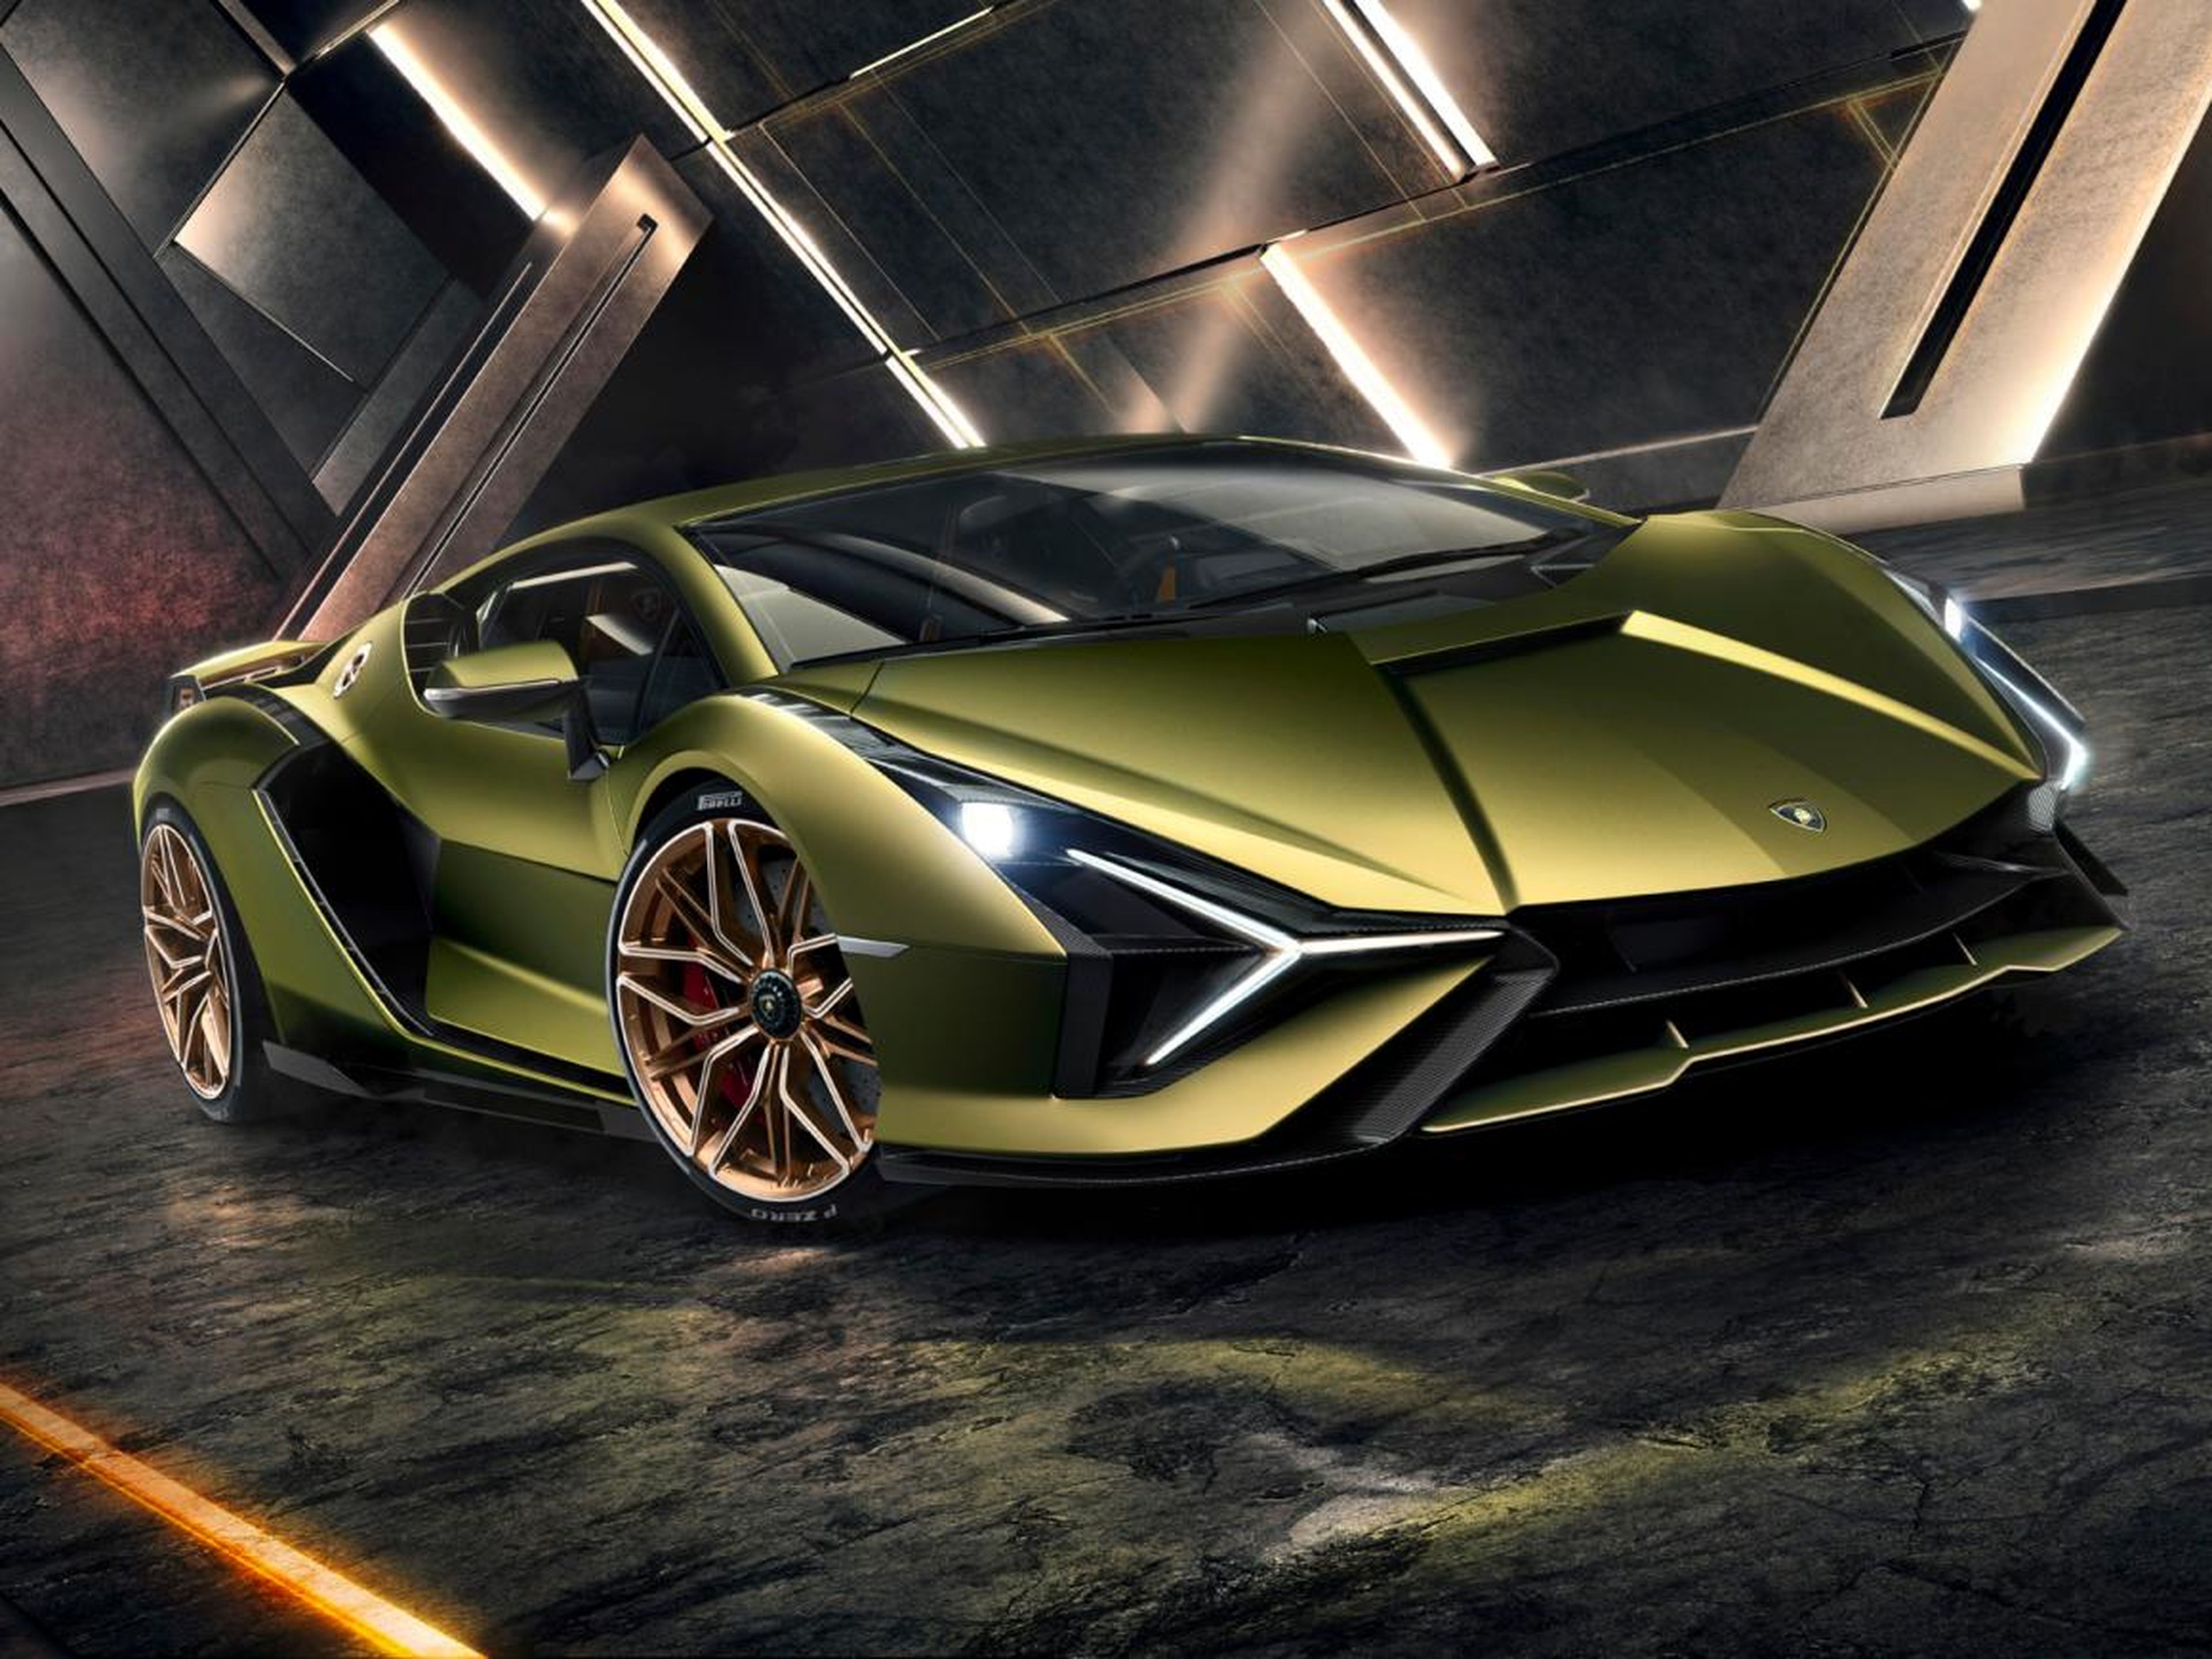 El modelo Sián tiene una potencia combinada de 819 caballos, convirtiéndolo en el coche más potente que Lamborghini haya hecho.